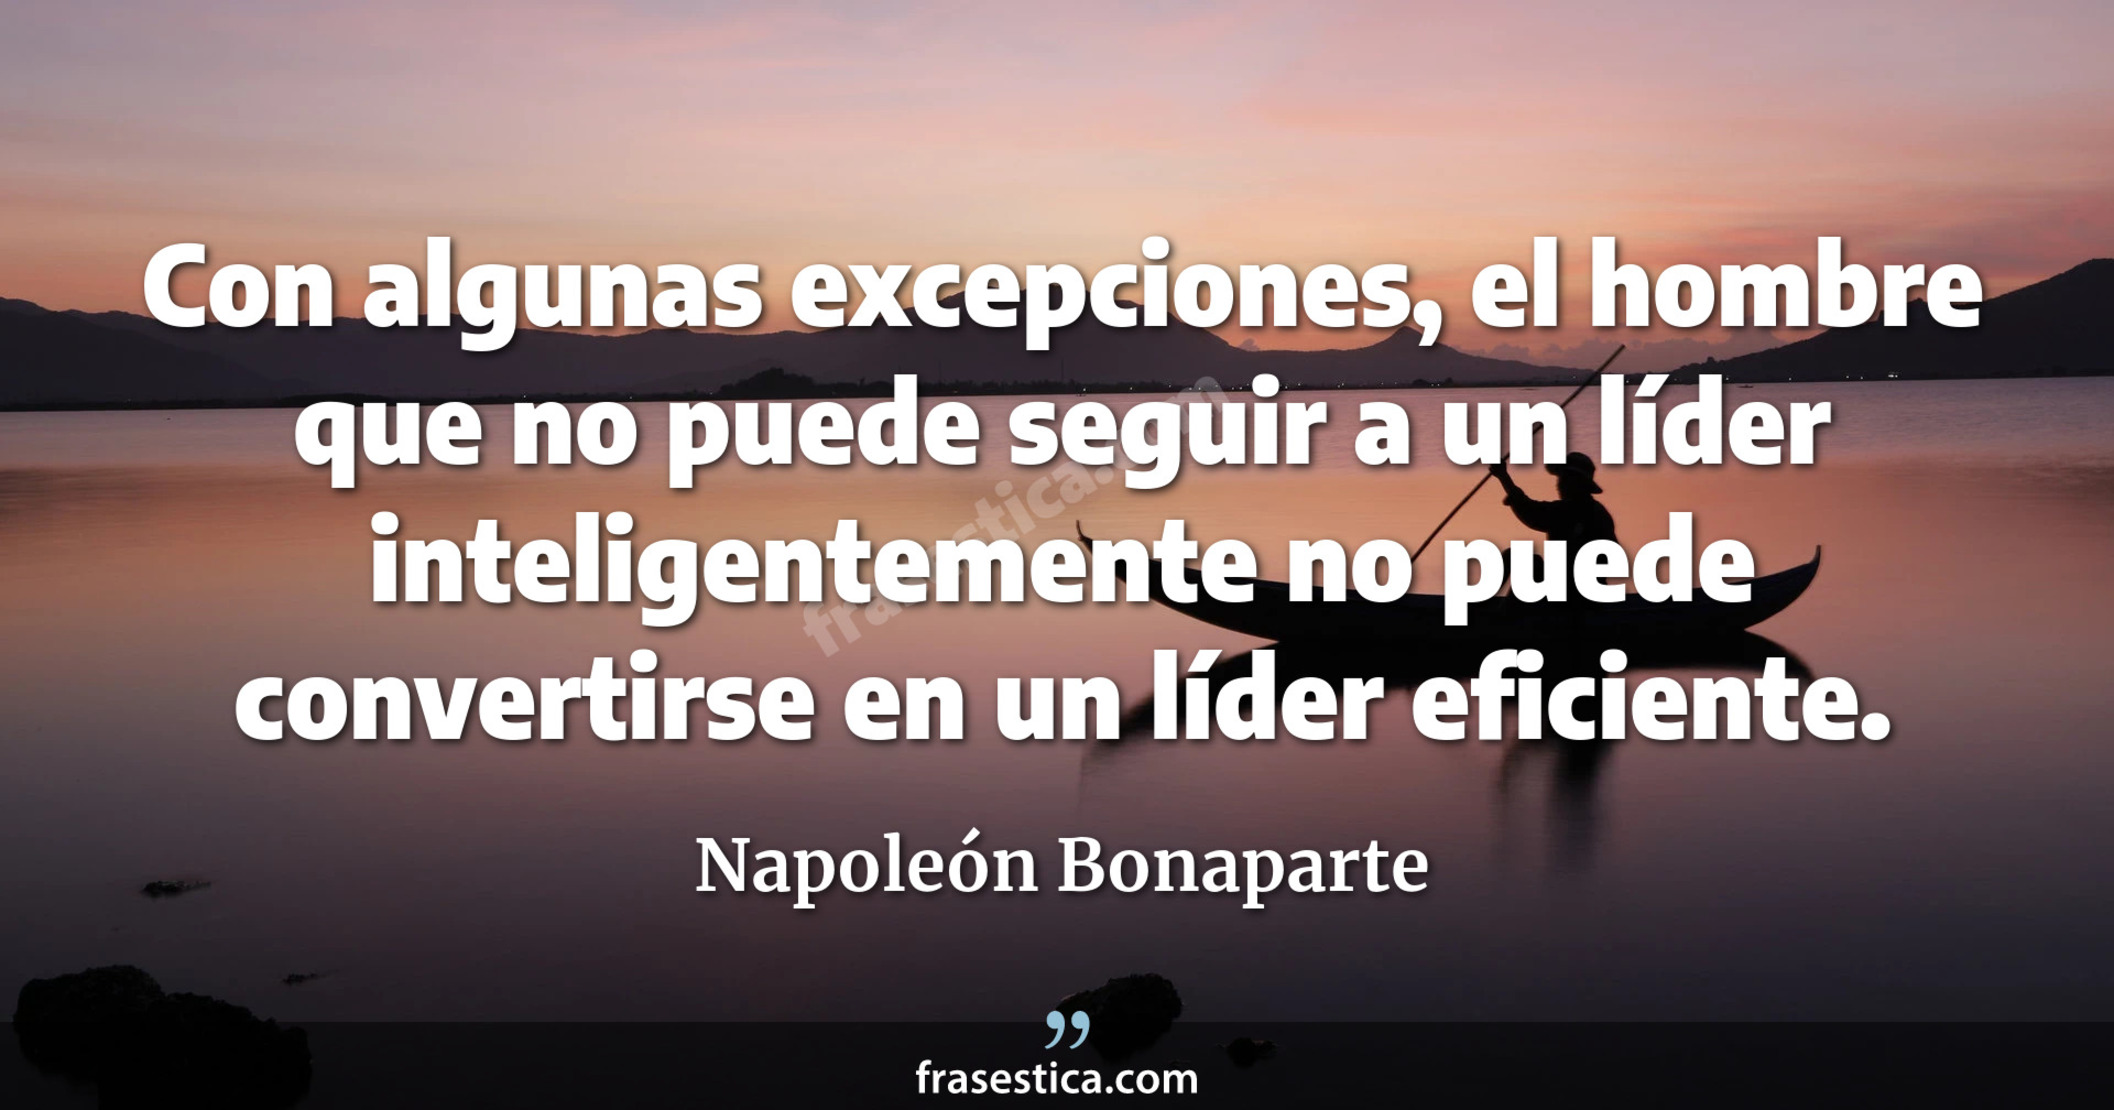 Con algunas excepciones, el hombre que no puede seguir a un líder inteligentemente no puede convertirse en un líder eficiente. - Napoleón Bonaparte